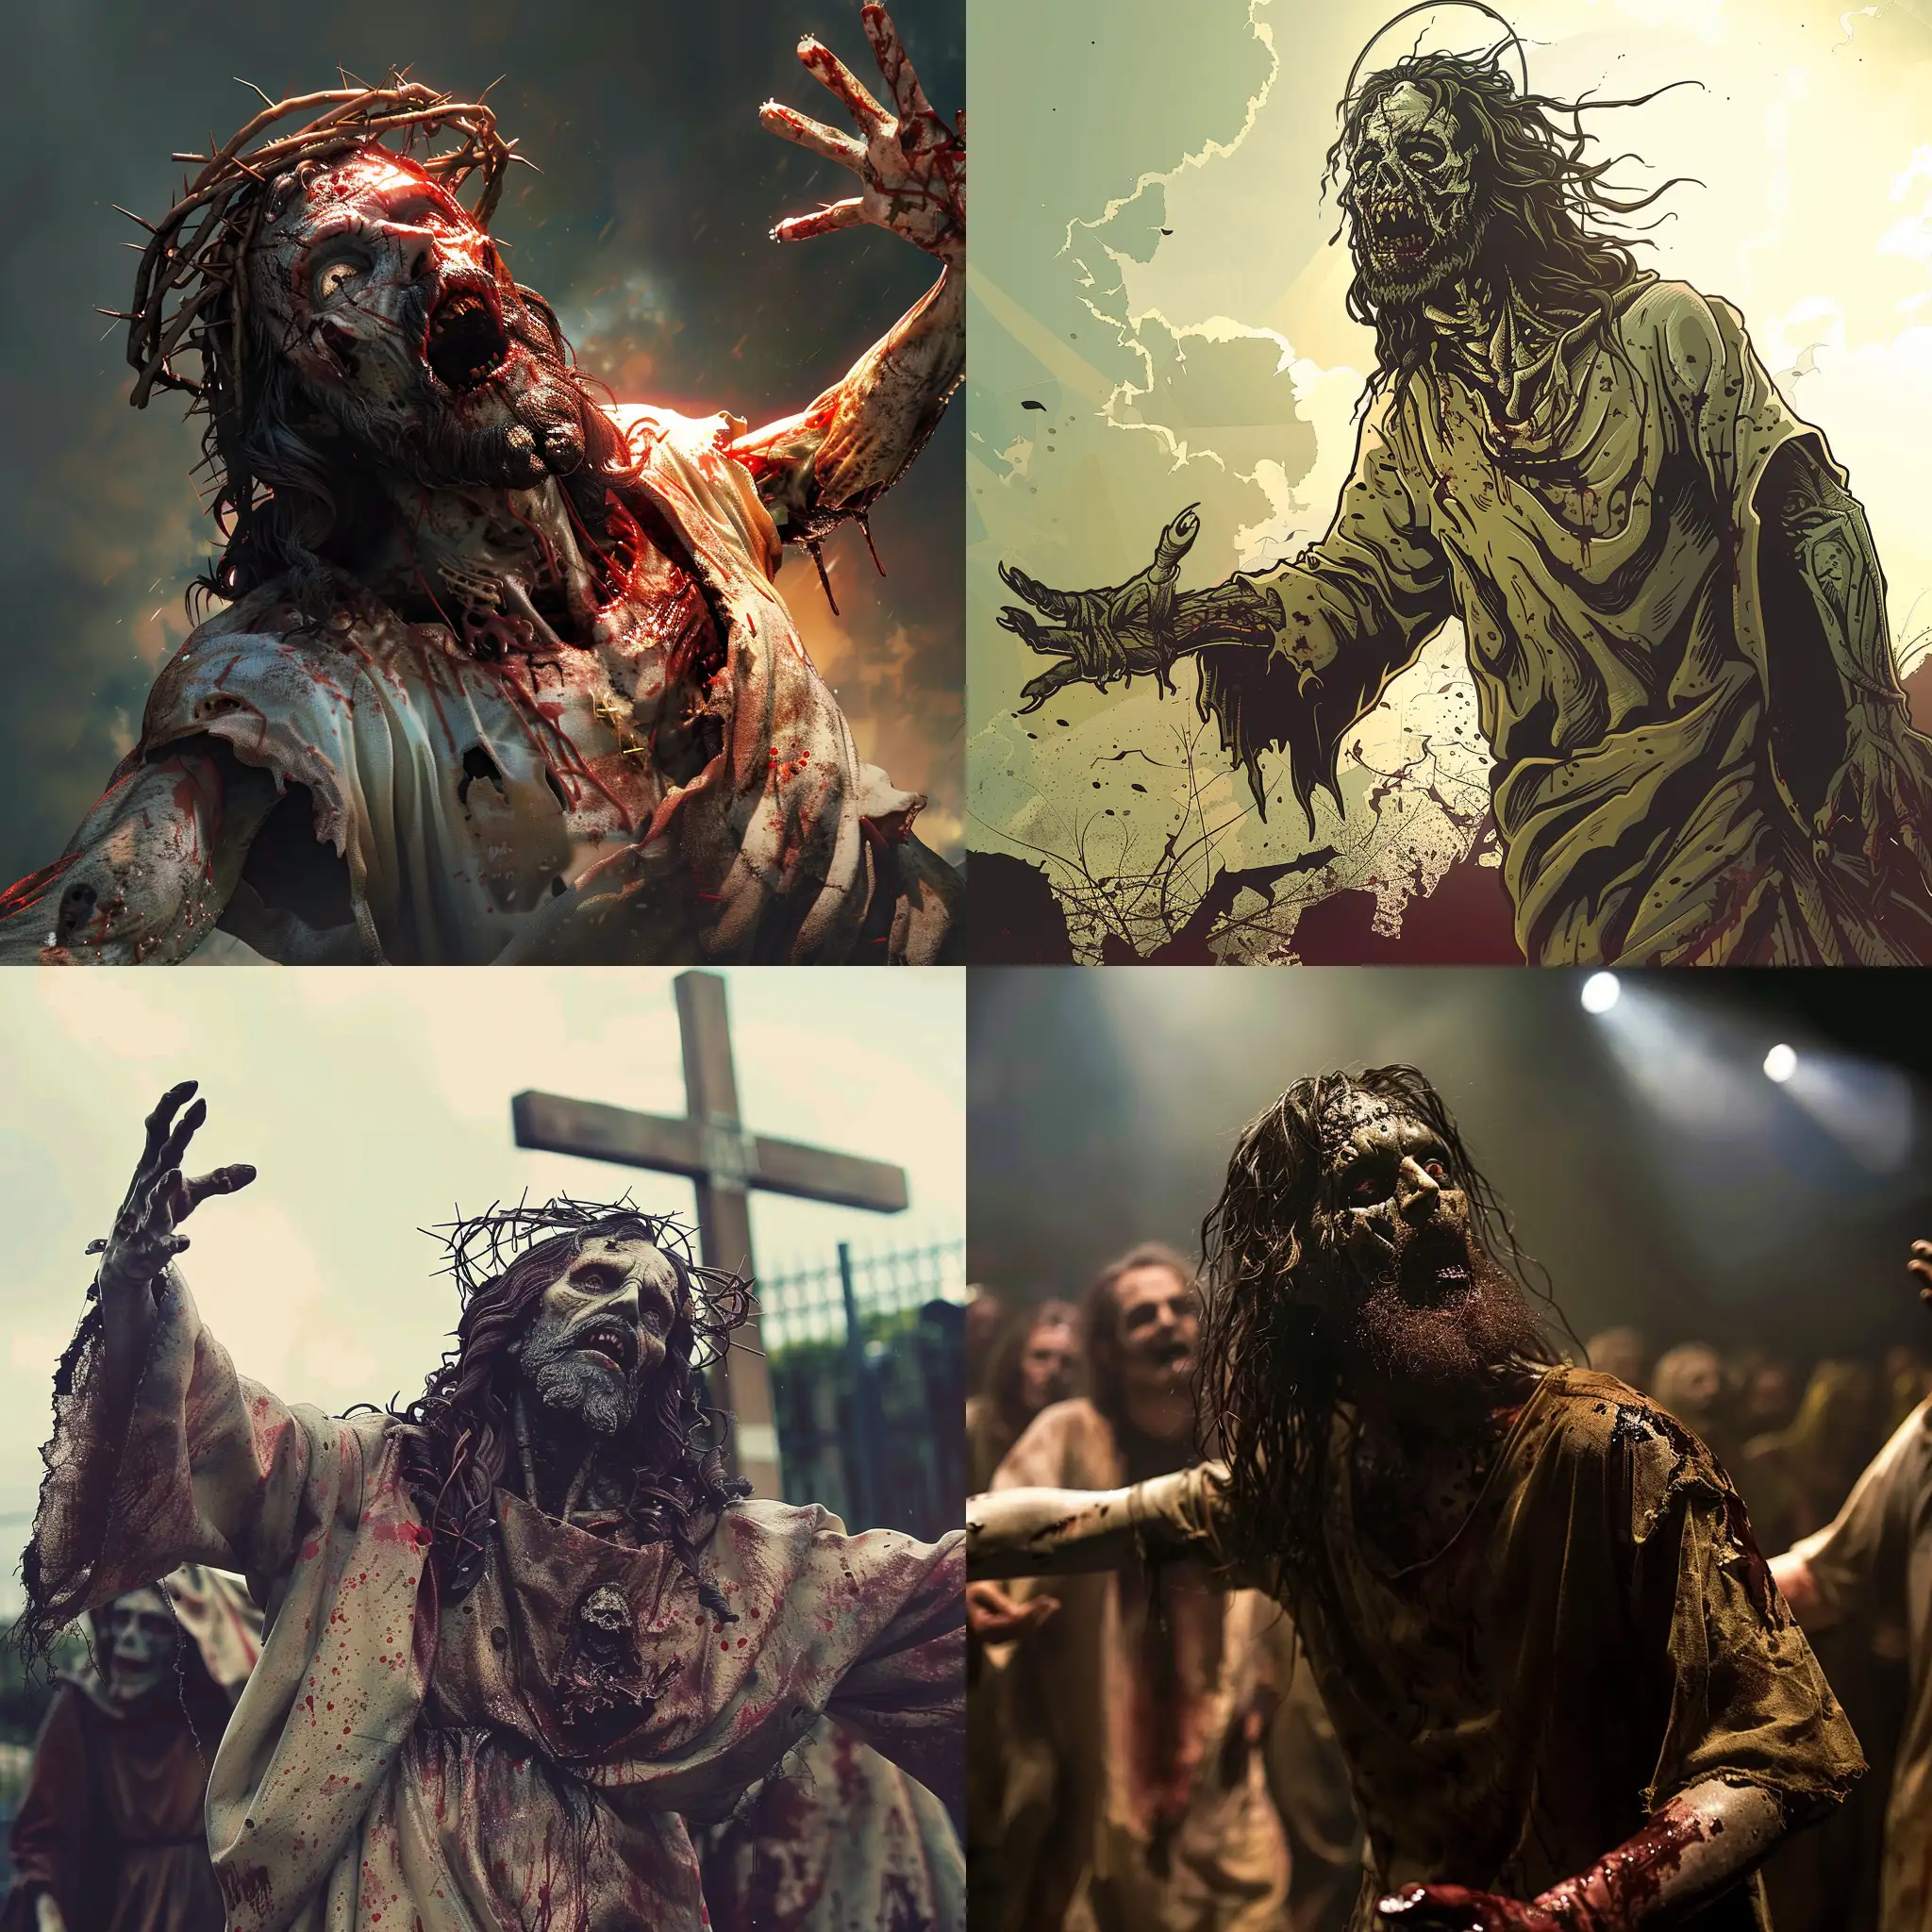 zombie jesus